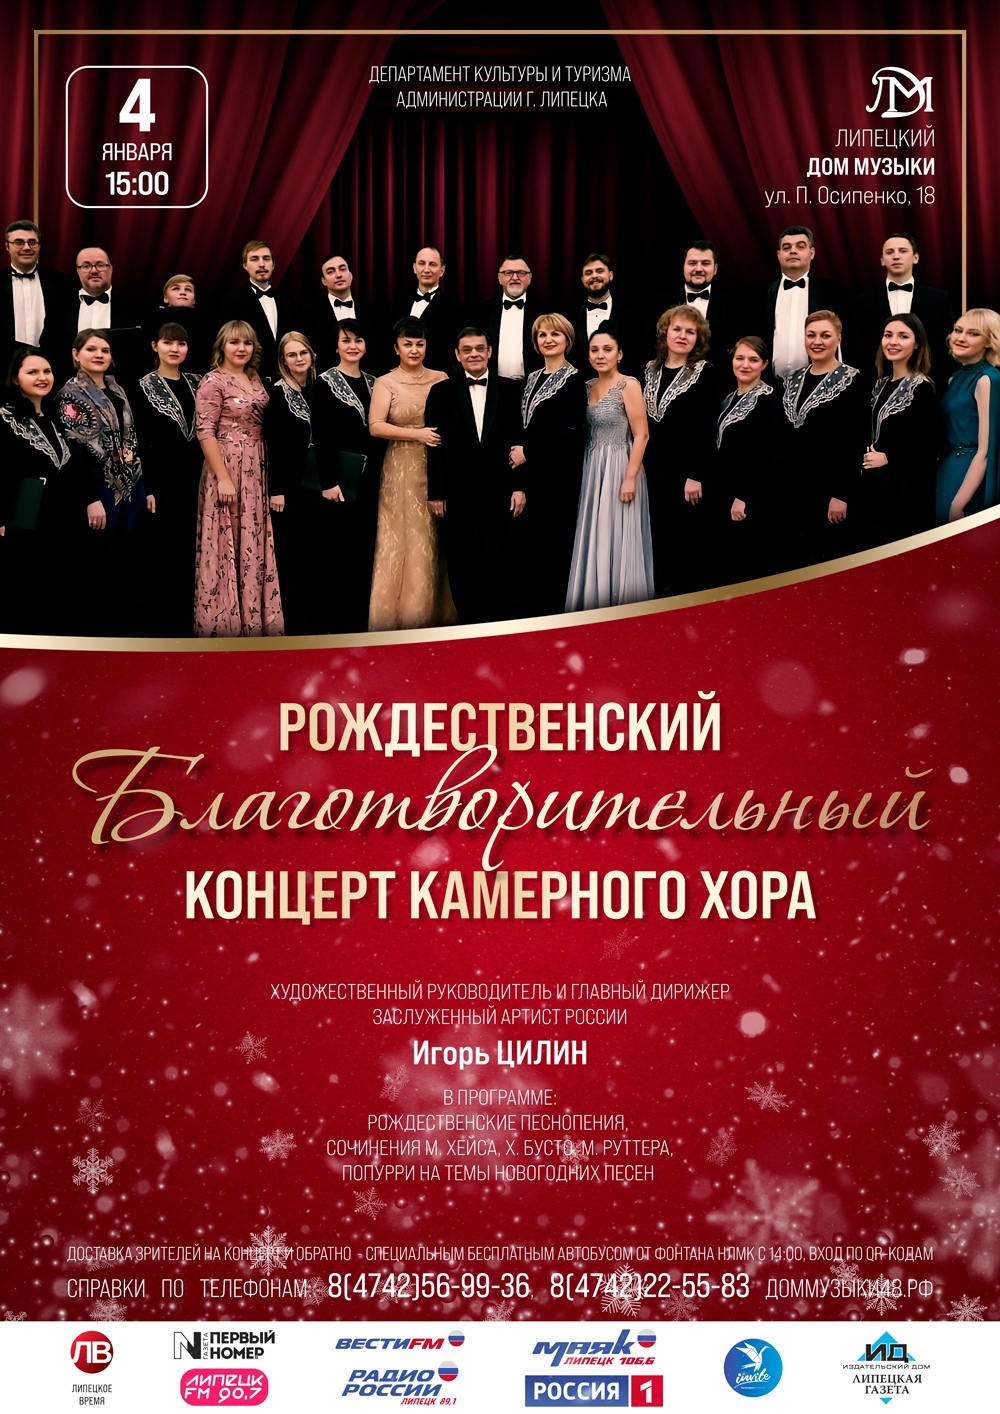 Рождественский благотворительный концерт камерного хора 0+